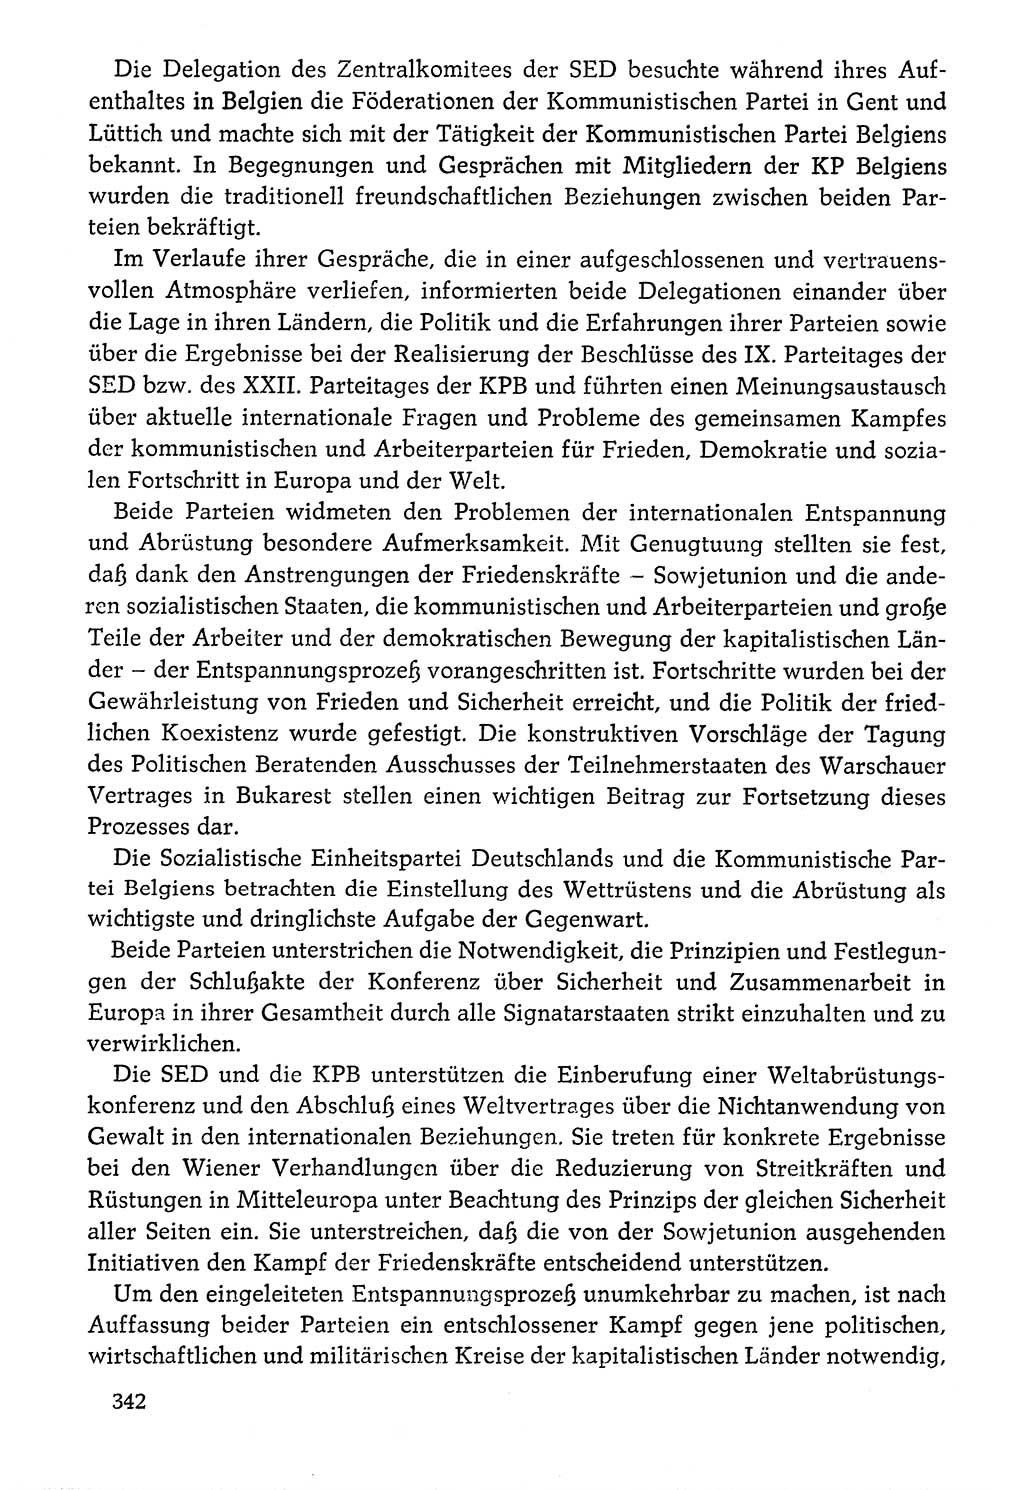 Dokumente der Sozialistischen Einheitspartei Deutschlands (SED) [Deutsche Demokratische Republik (DDR)] 1976-1977, Seite 342 (Dok. SED DDR 1976-1977, S. 342)